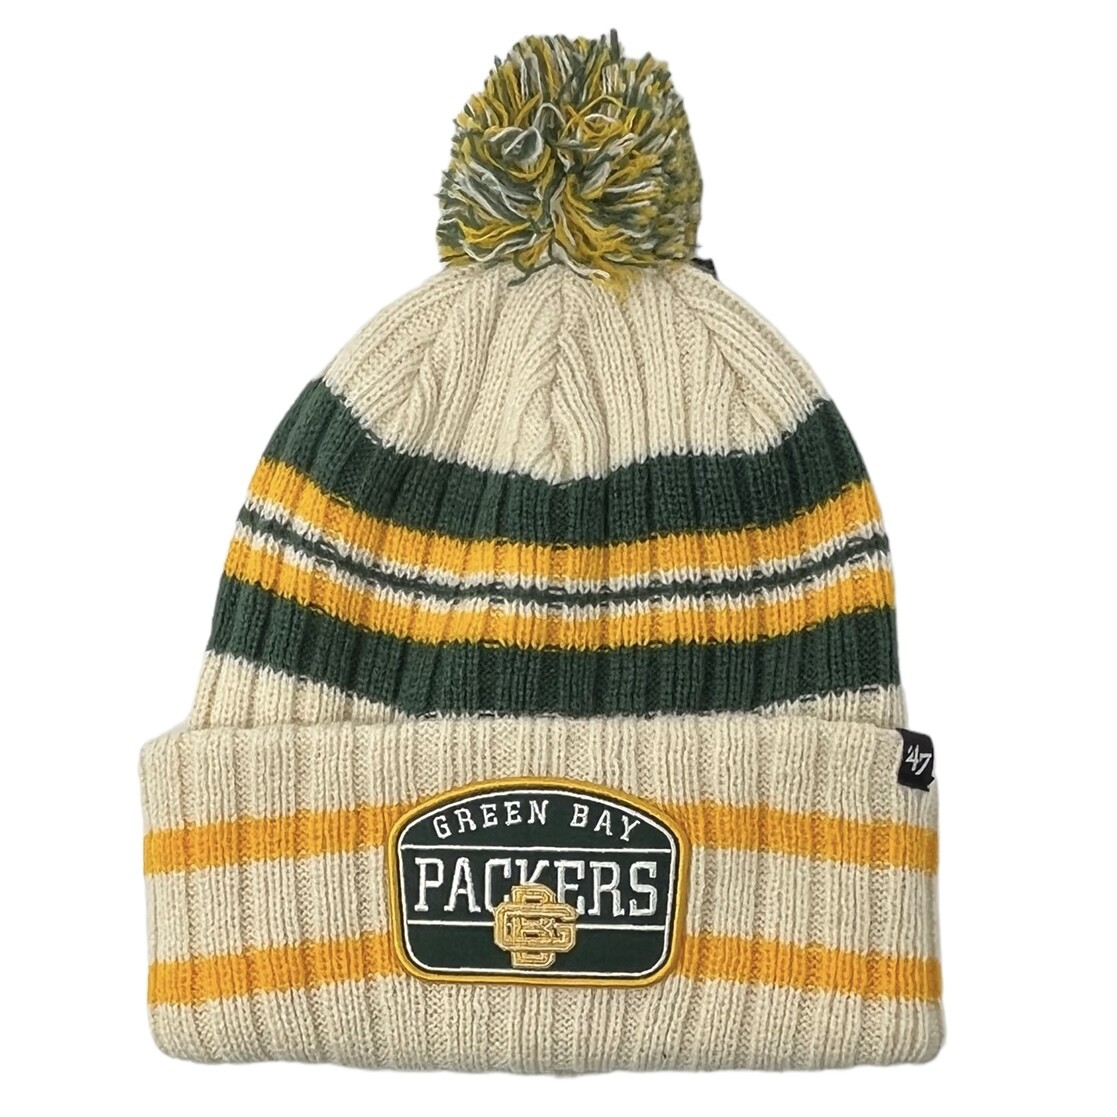 packers new era winter hat